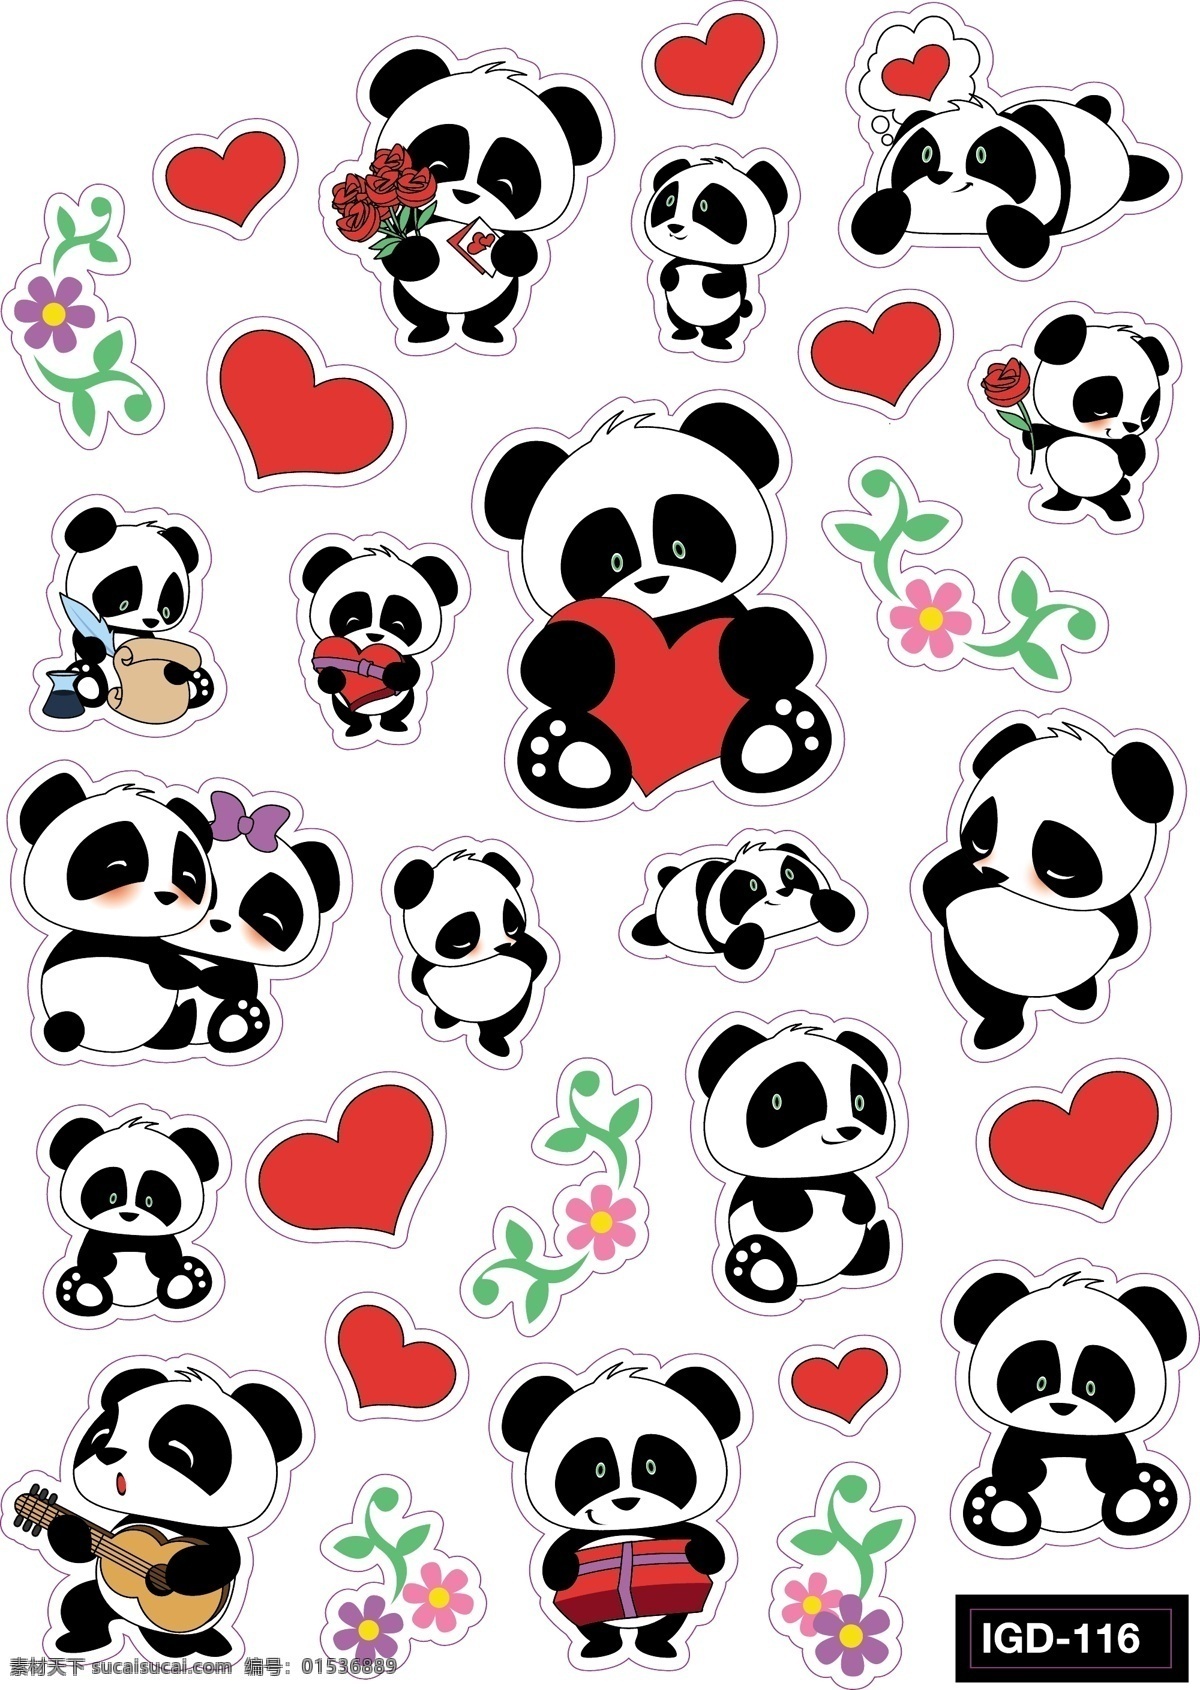 矢量 熊猫 卡通 元素 装饰 图案 集合 矢量熊猫 卡通熊猫 熊猫元素 熊猫装饰 熊猫图案 可爱熊猫 彩色 爱心熊猫 描边